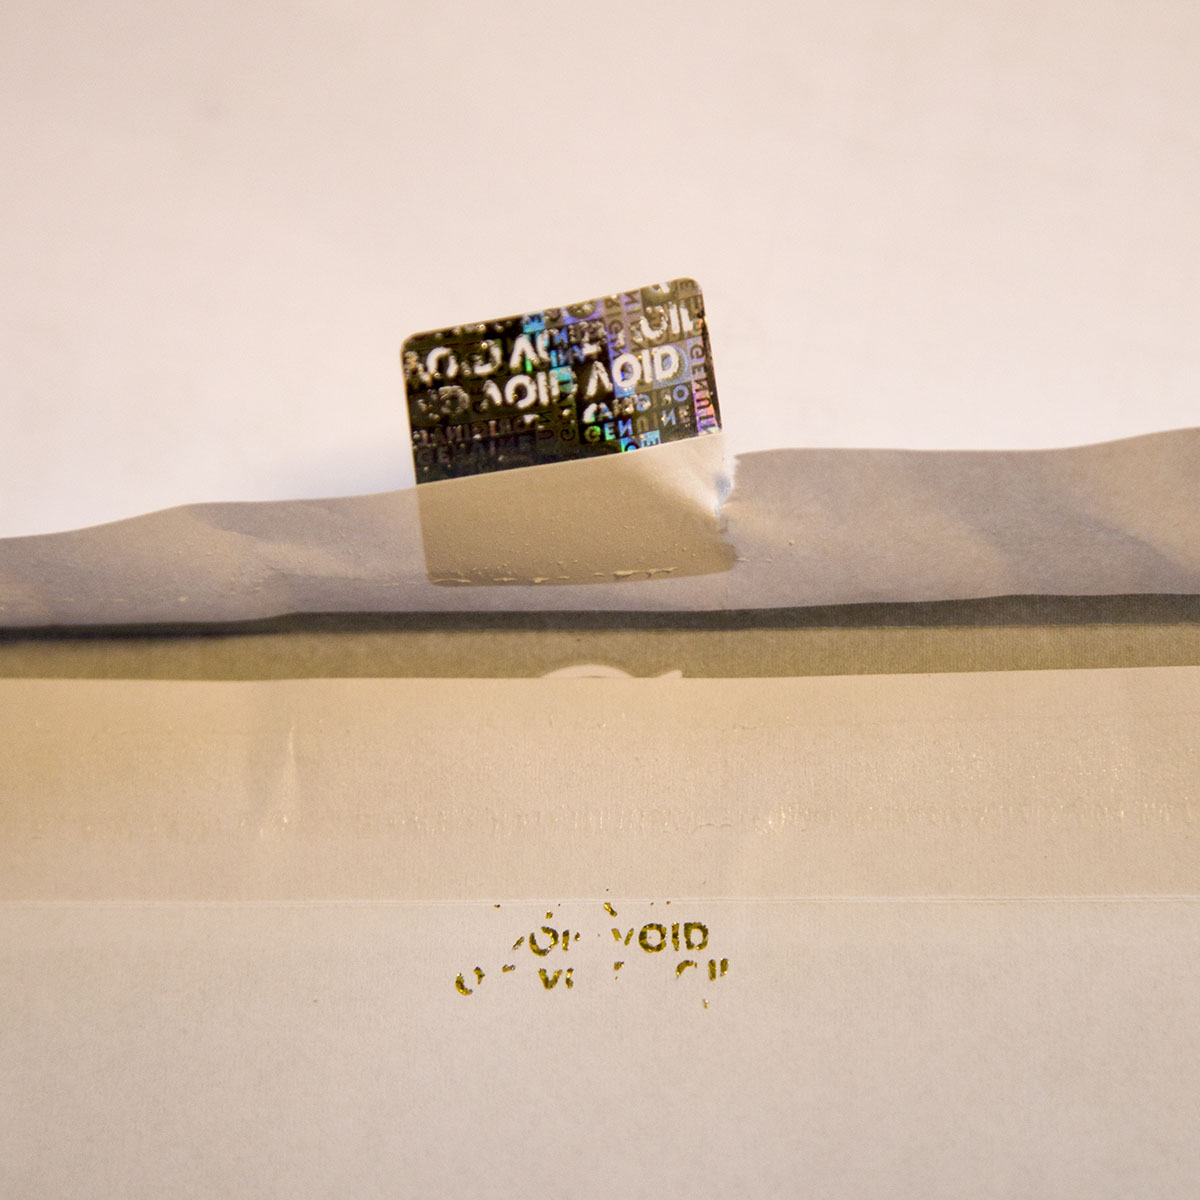 (mittel bis 500 mm²) Personalisierter 3D Hologramm Sticker/Siegel